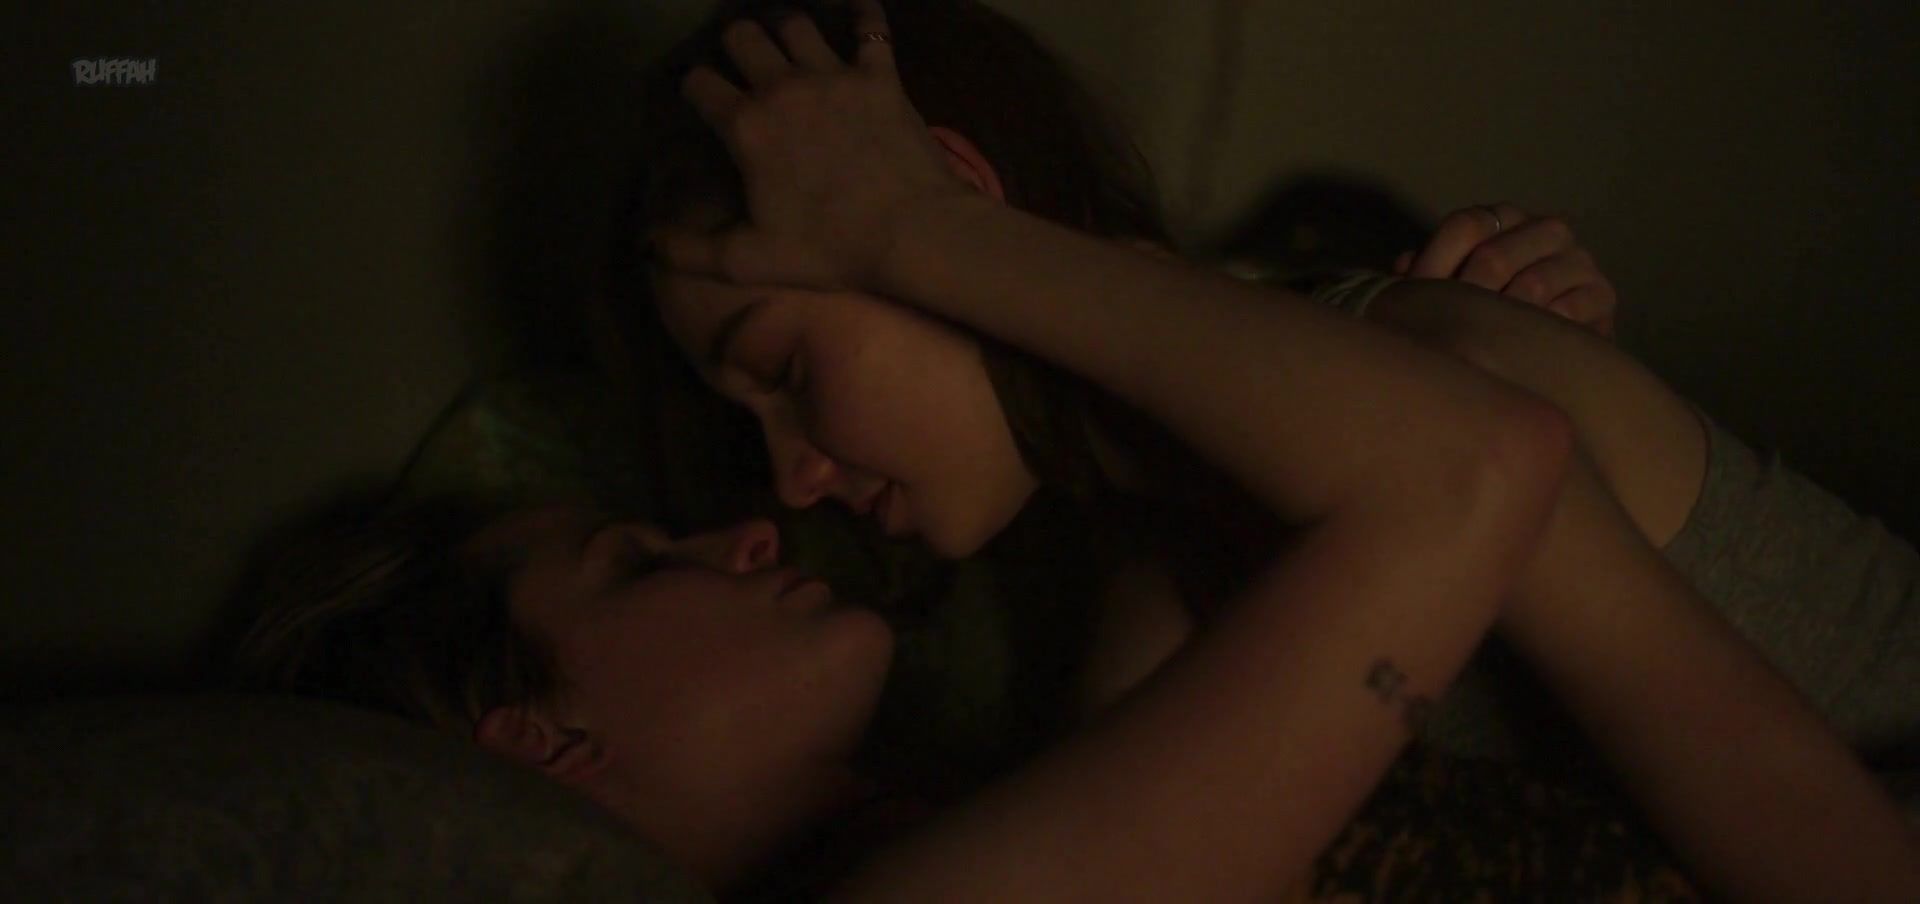 Bigbooty Allure - Lesbian Scene (NN) Phat